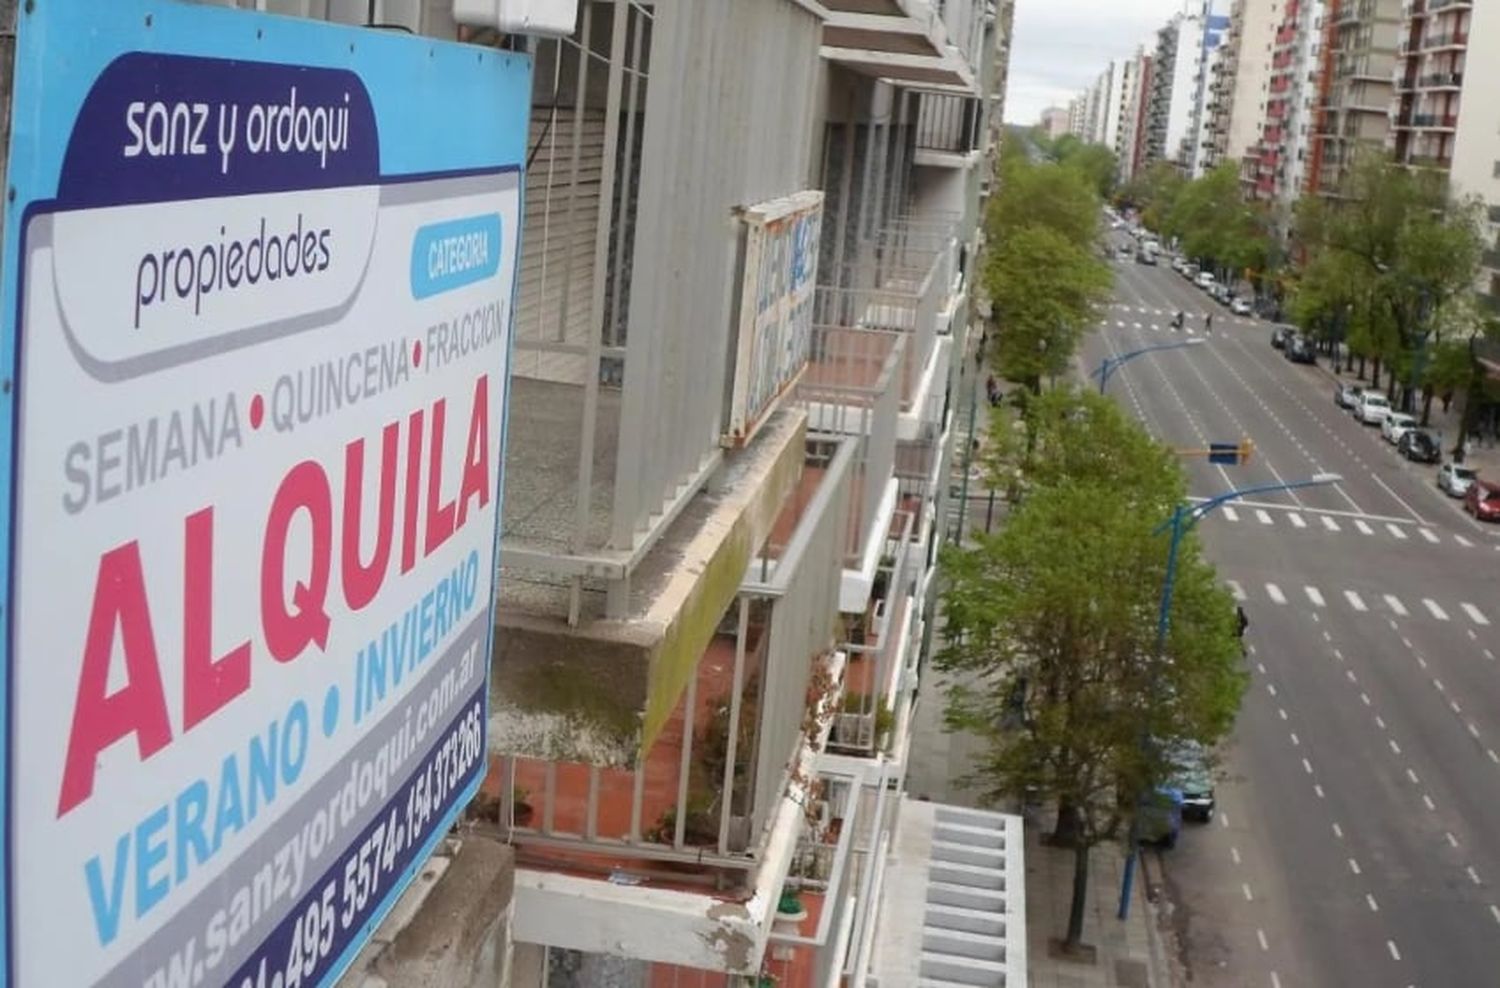 Alquileres: el diputado Quetglas propone “estímulos” para reactivar la oferta de viviendas